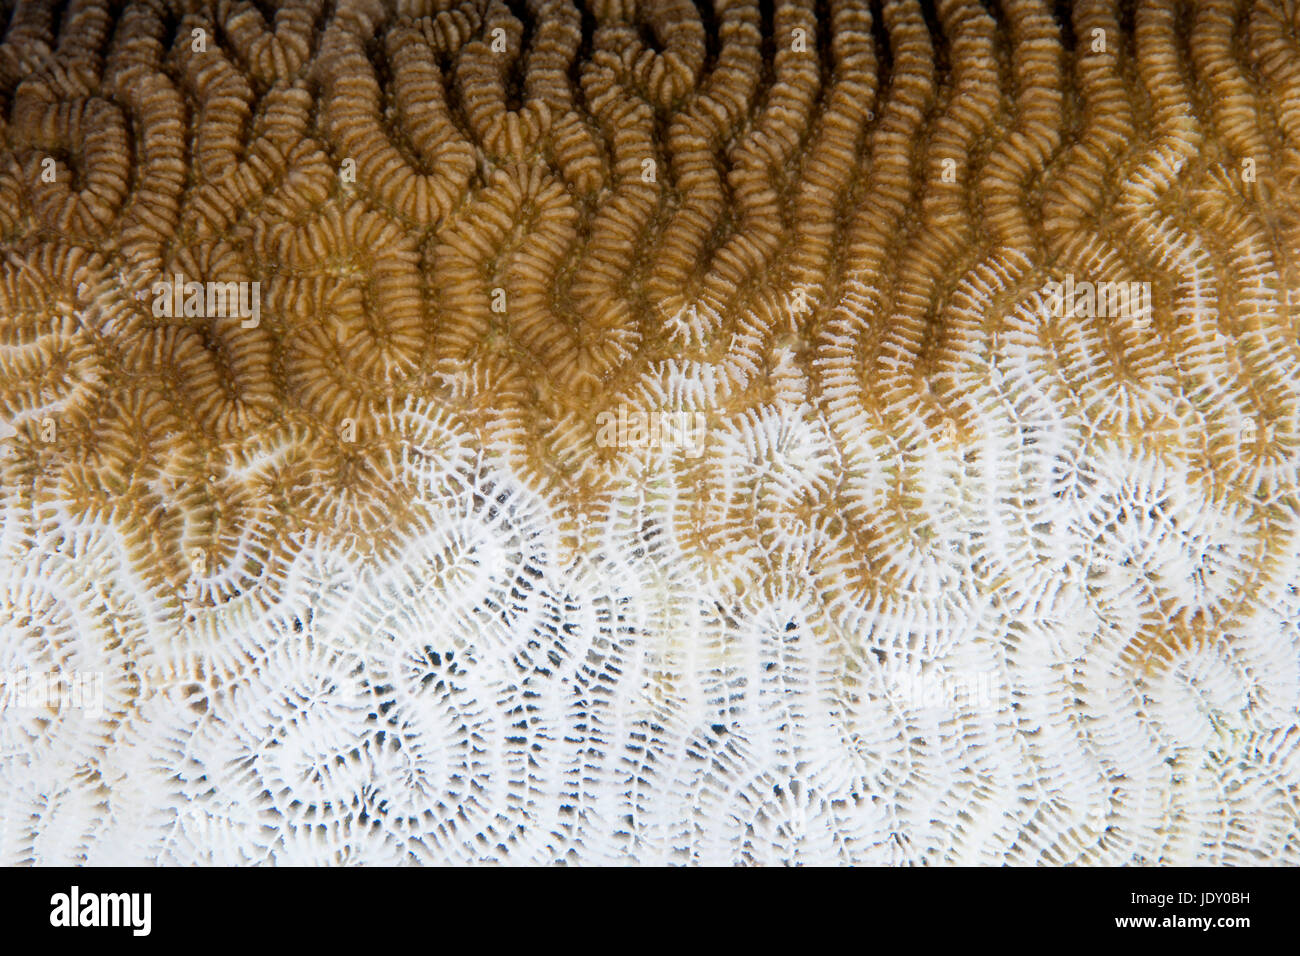 El blanquimiento de los corales, Melanesia, el Océano Pacífico, las Islas Salomón Foto de stock